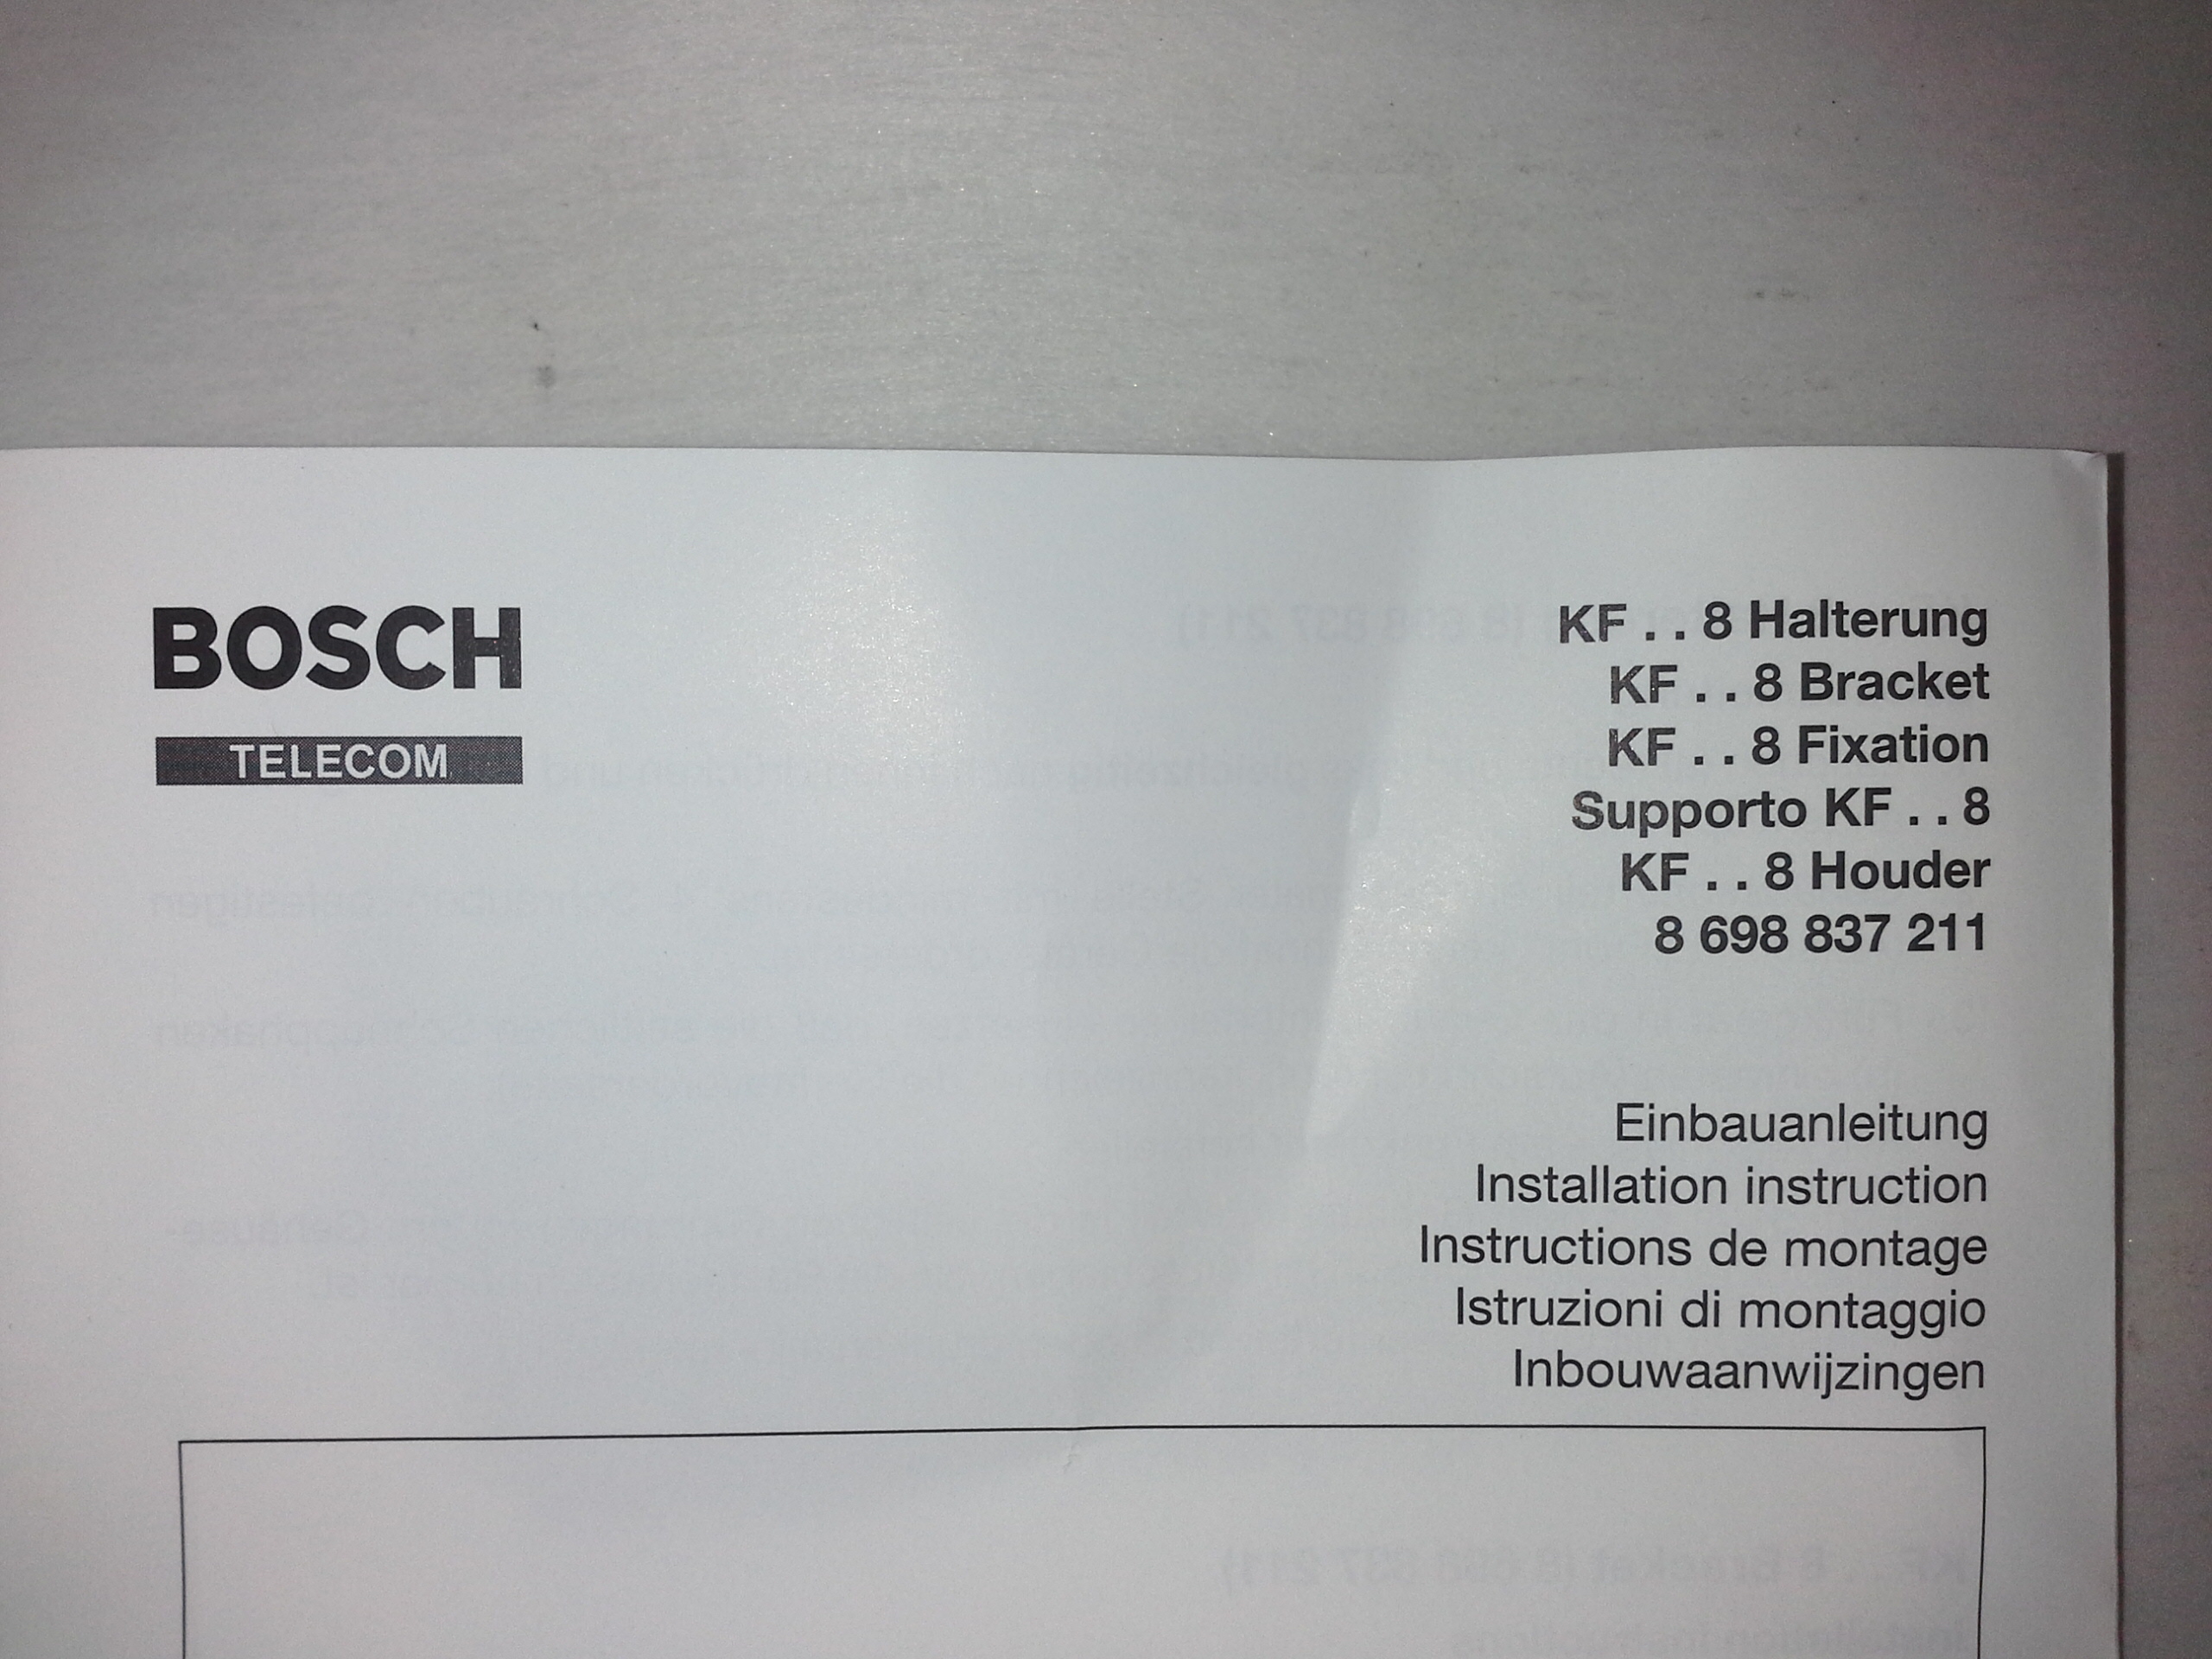 Bosch KF-8 Halterung